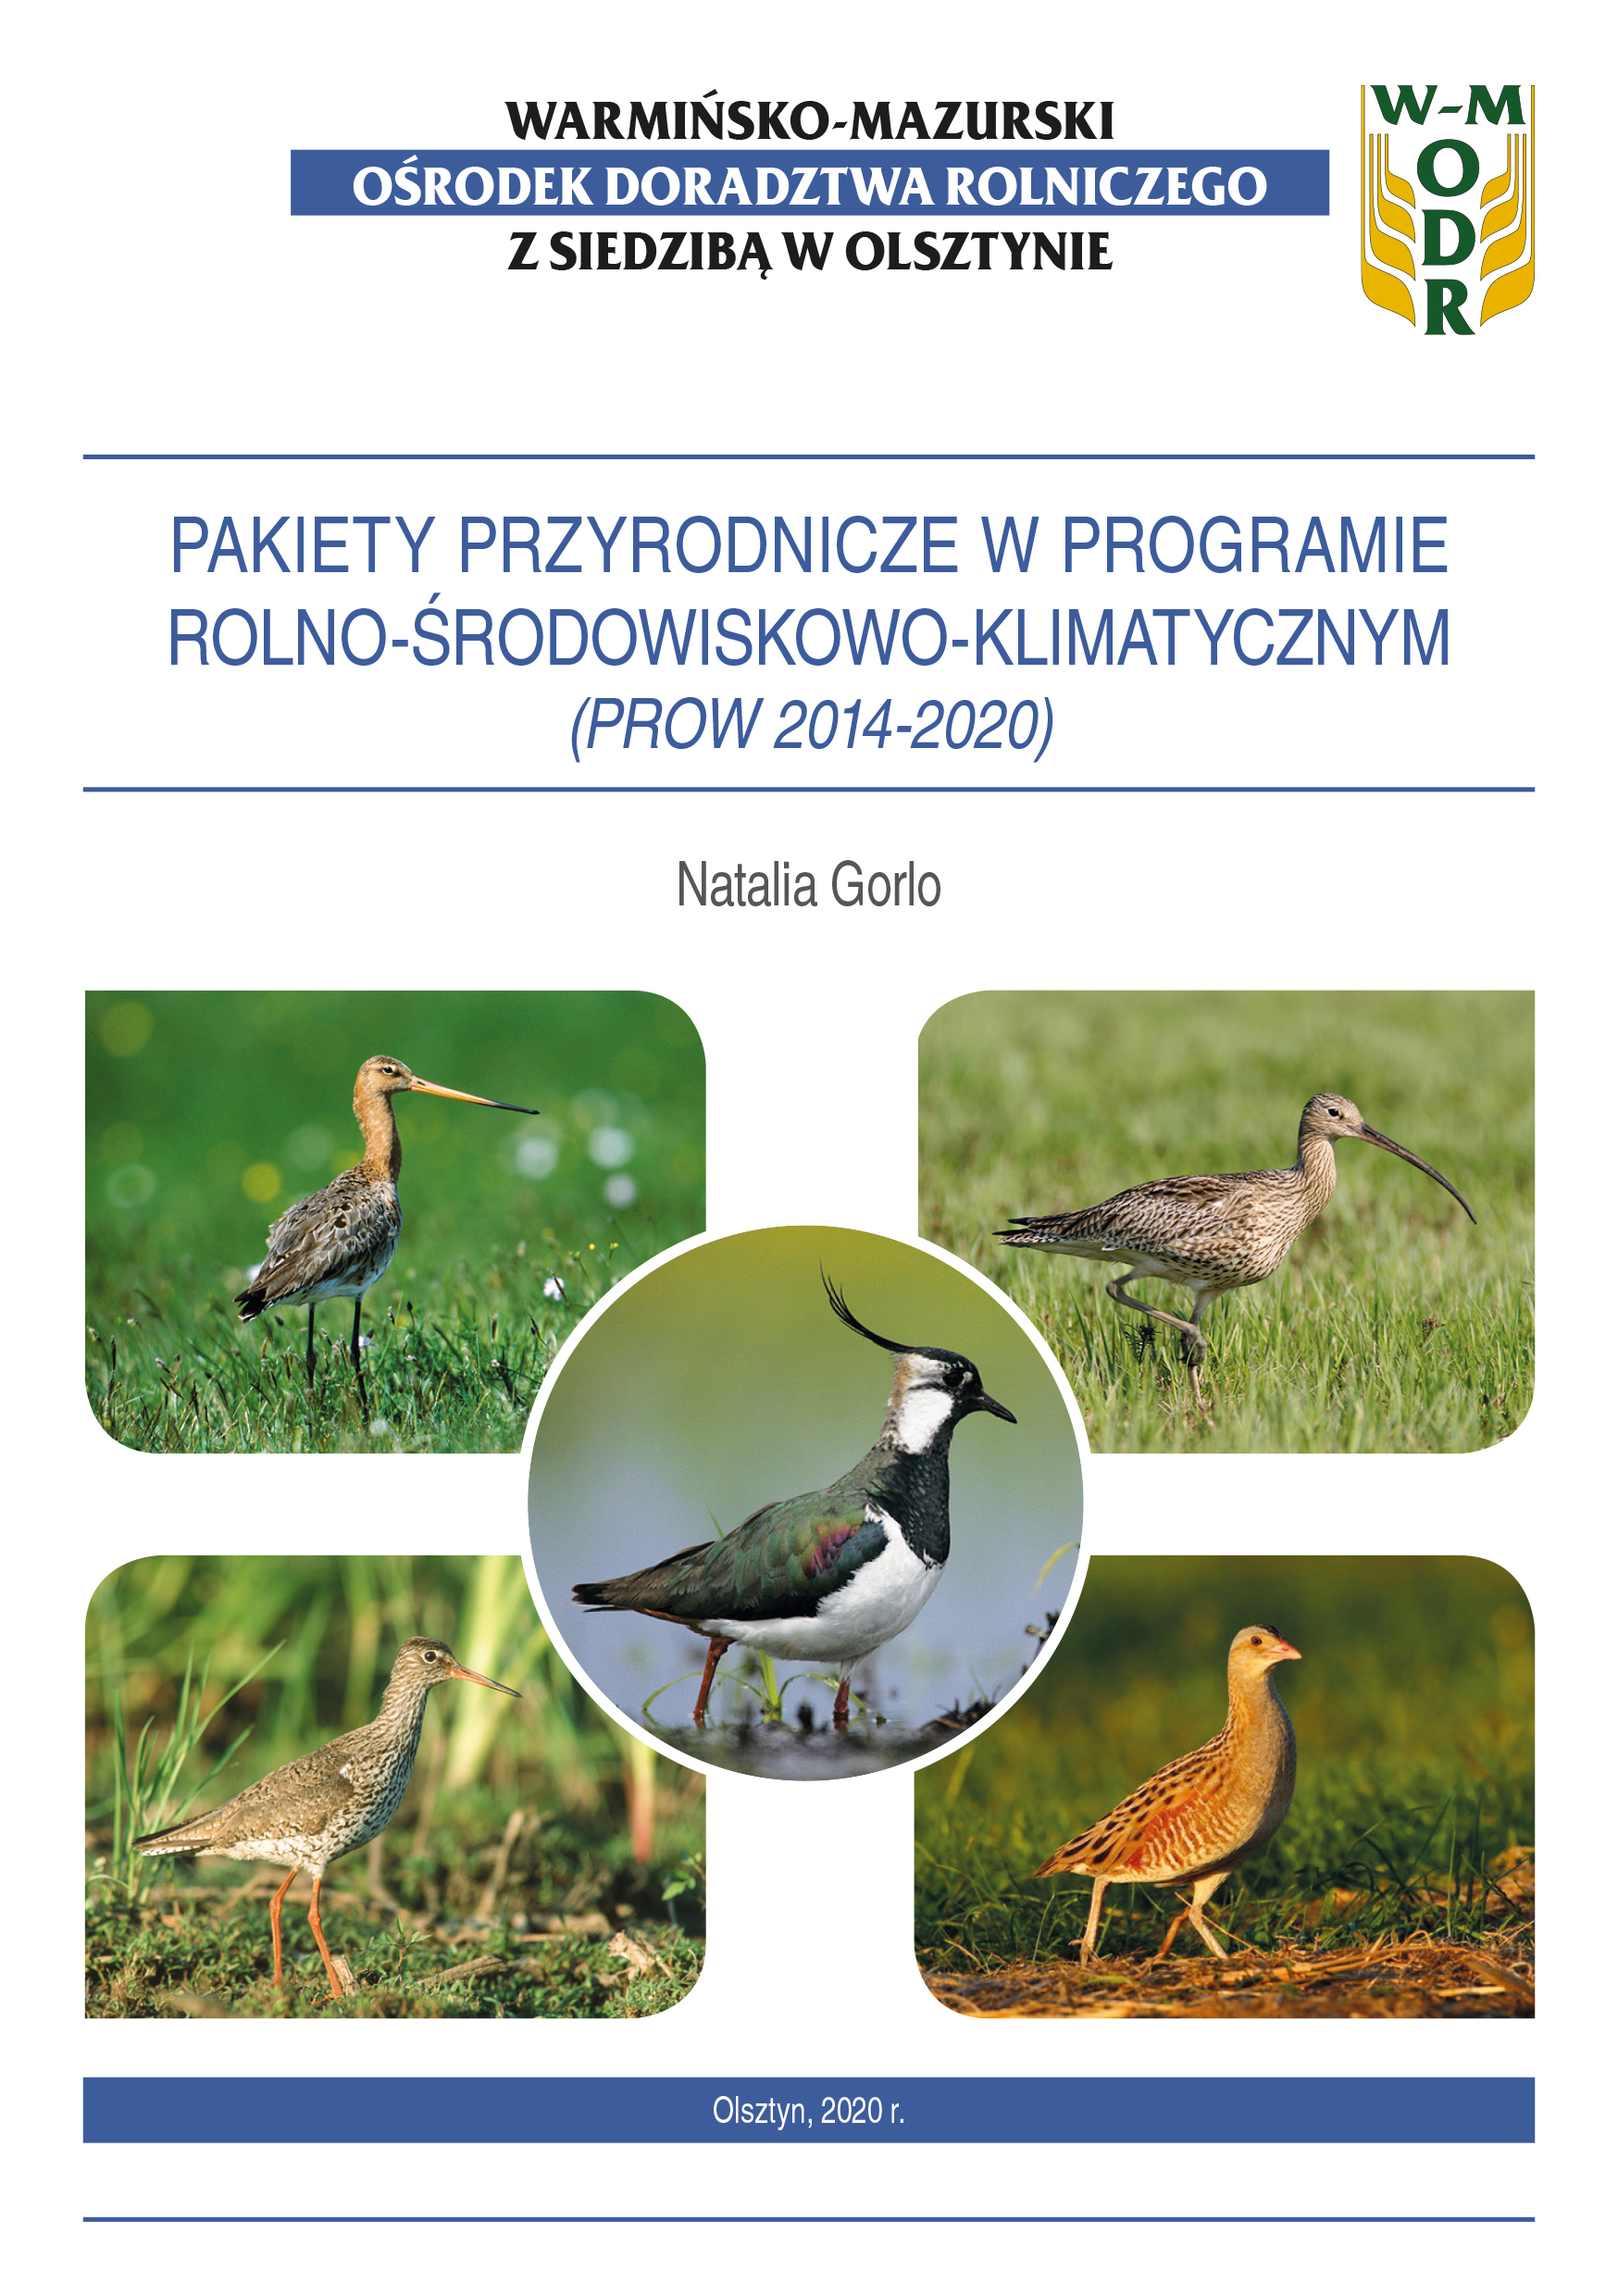 Pakiety przyrodnicze w programie rolno-środowiskowo-klimatycznym (PROW 2014-2020)